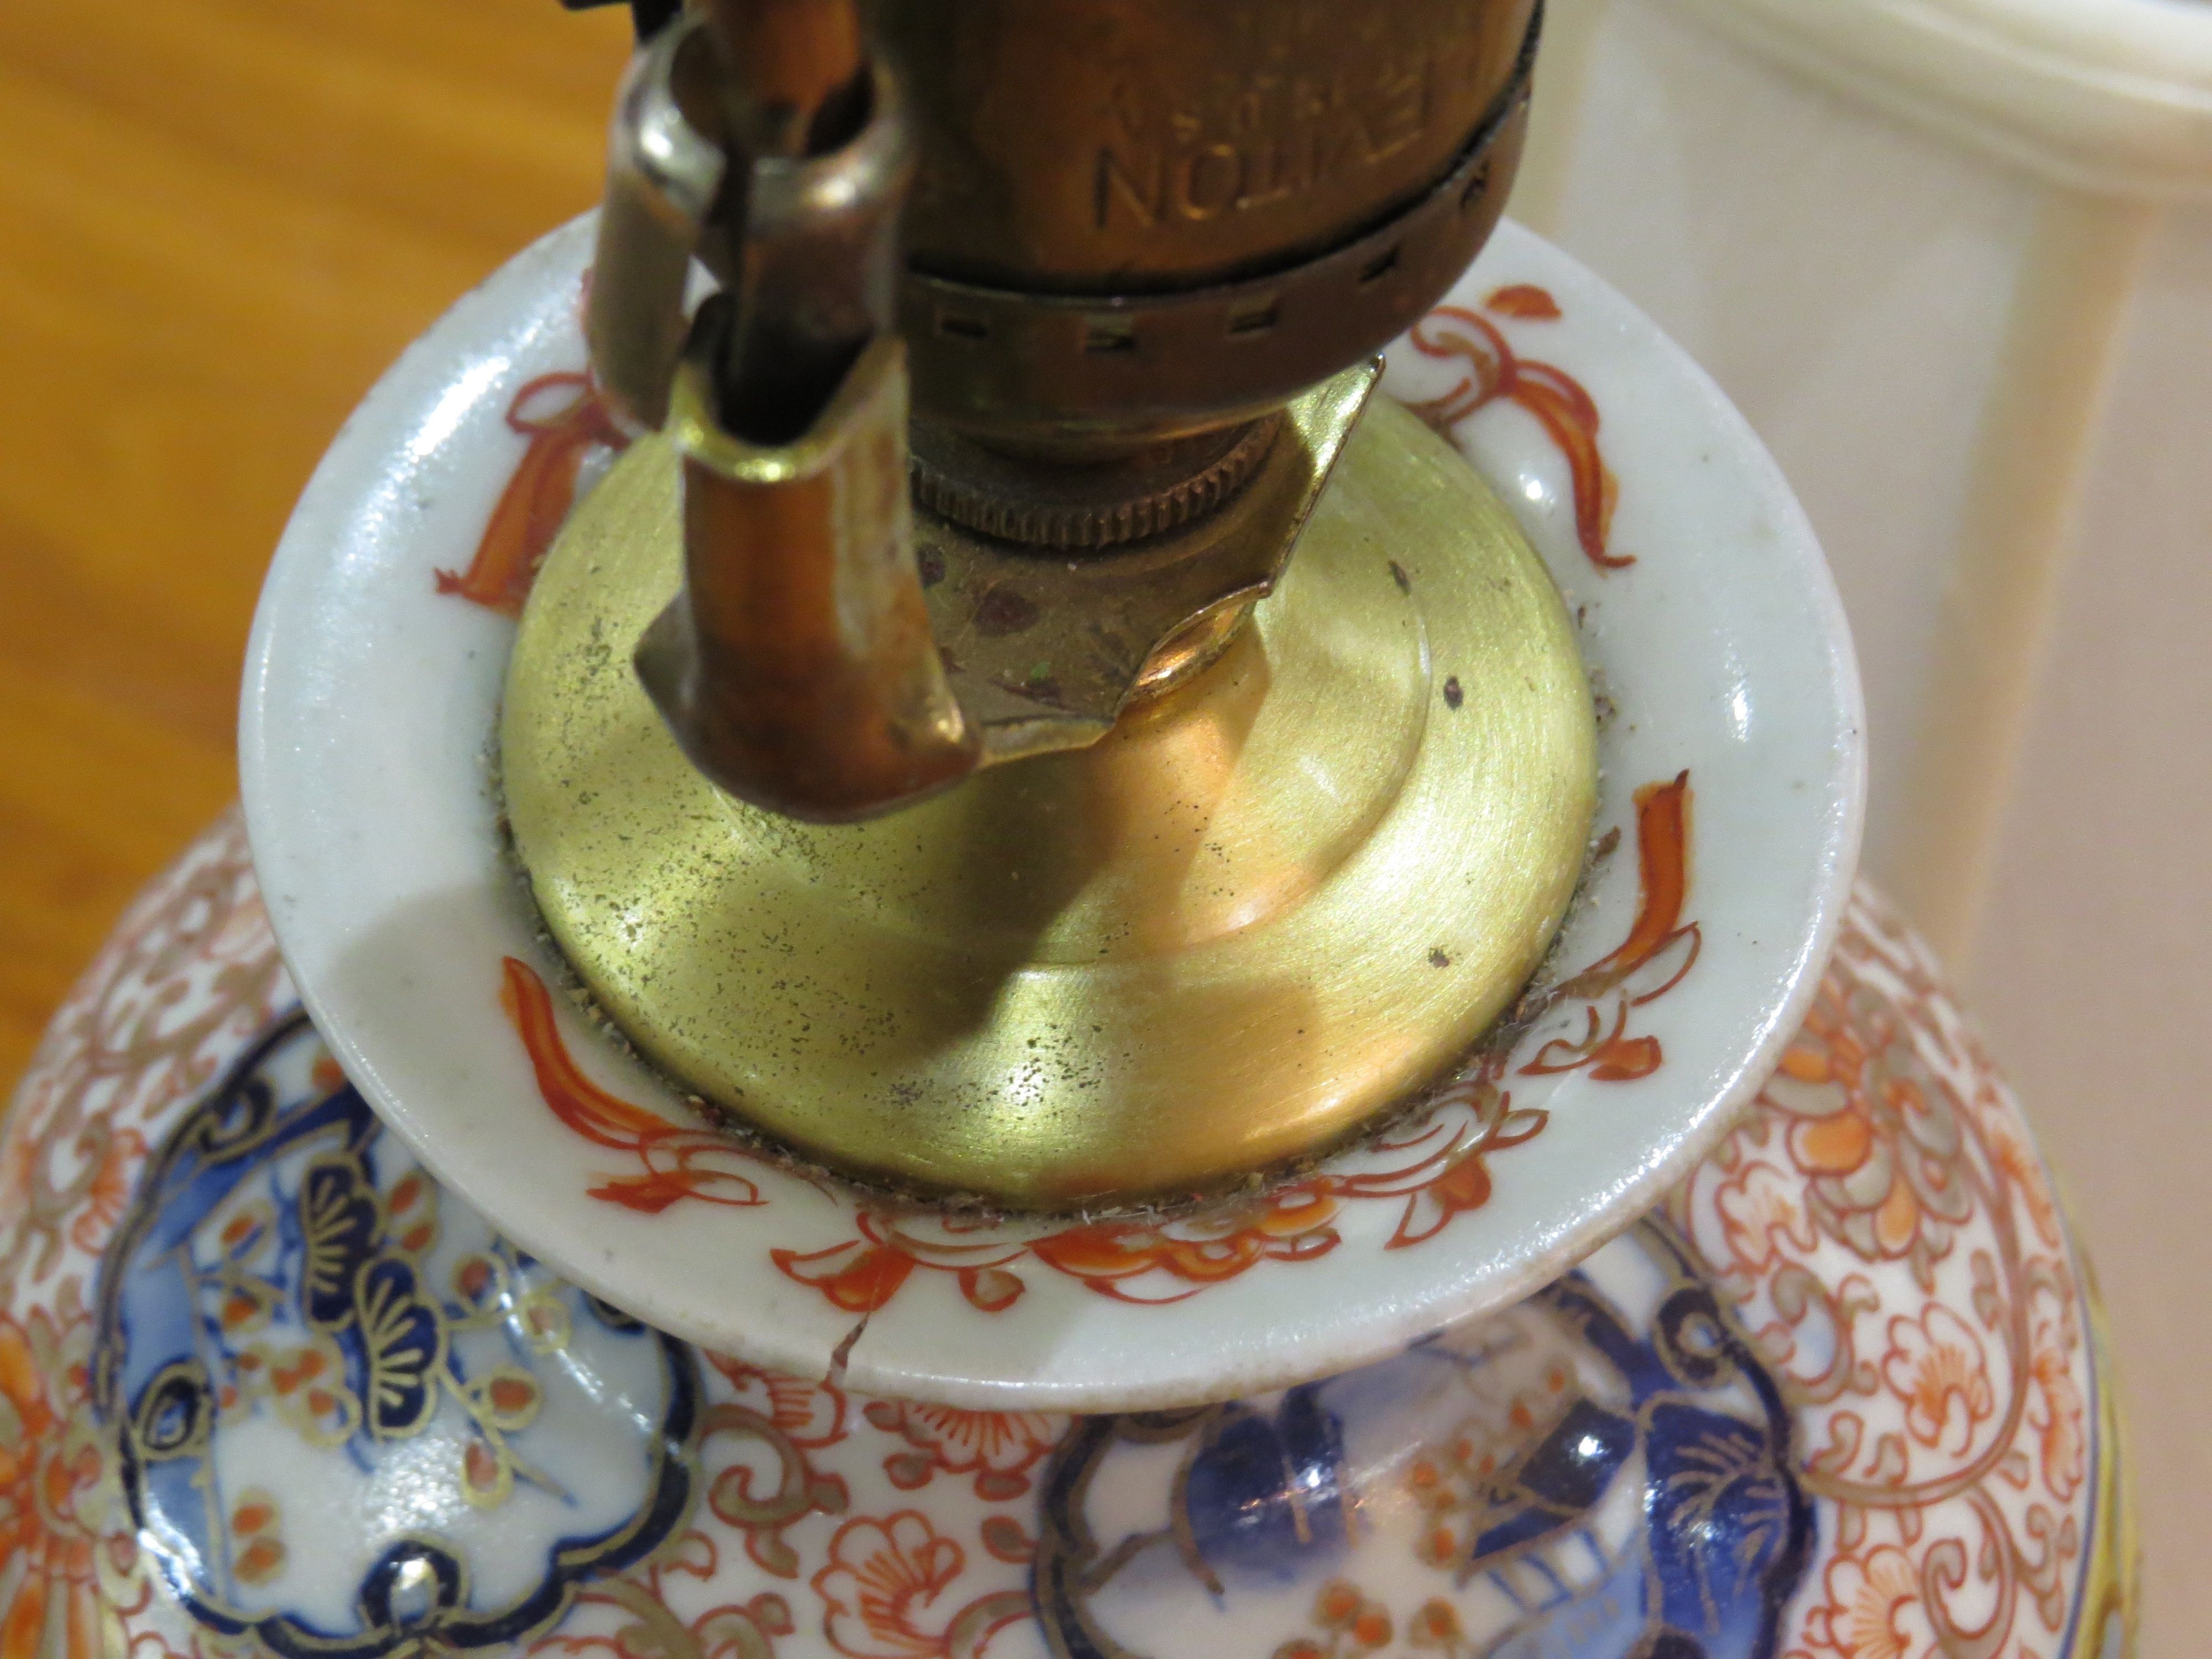 Petite Pair of Asian Inspired Porcelain Lamps